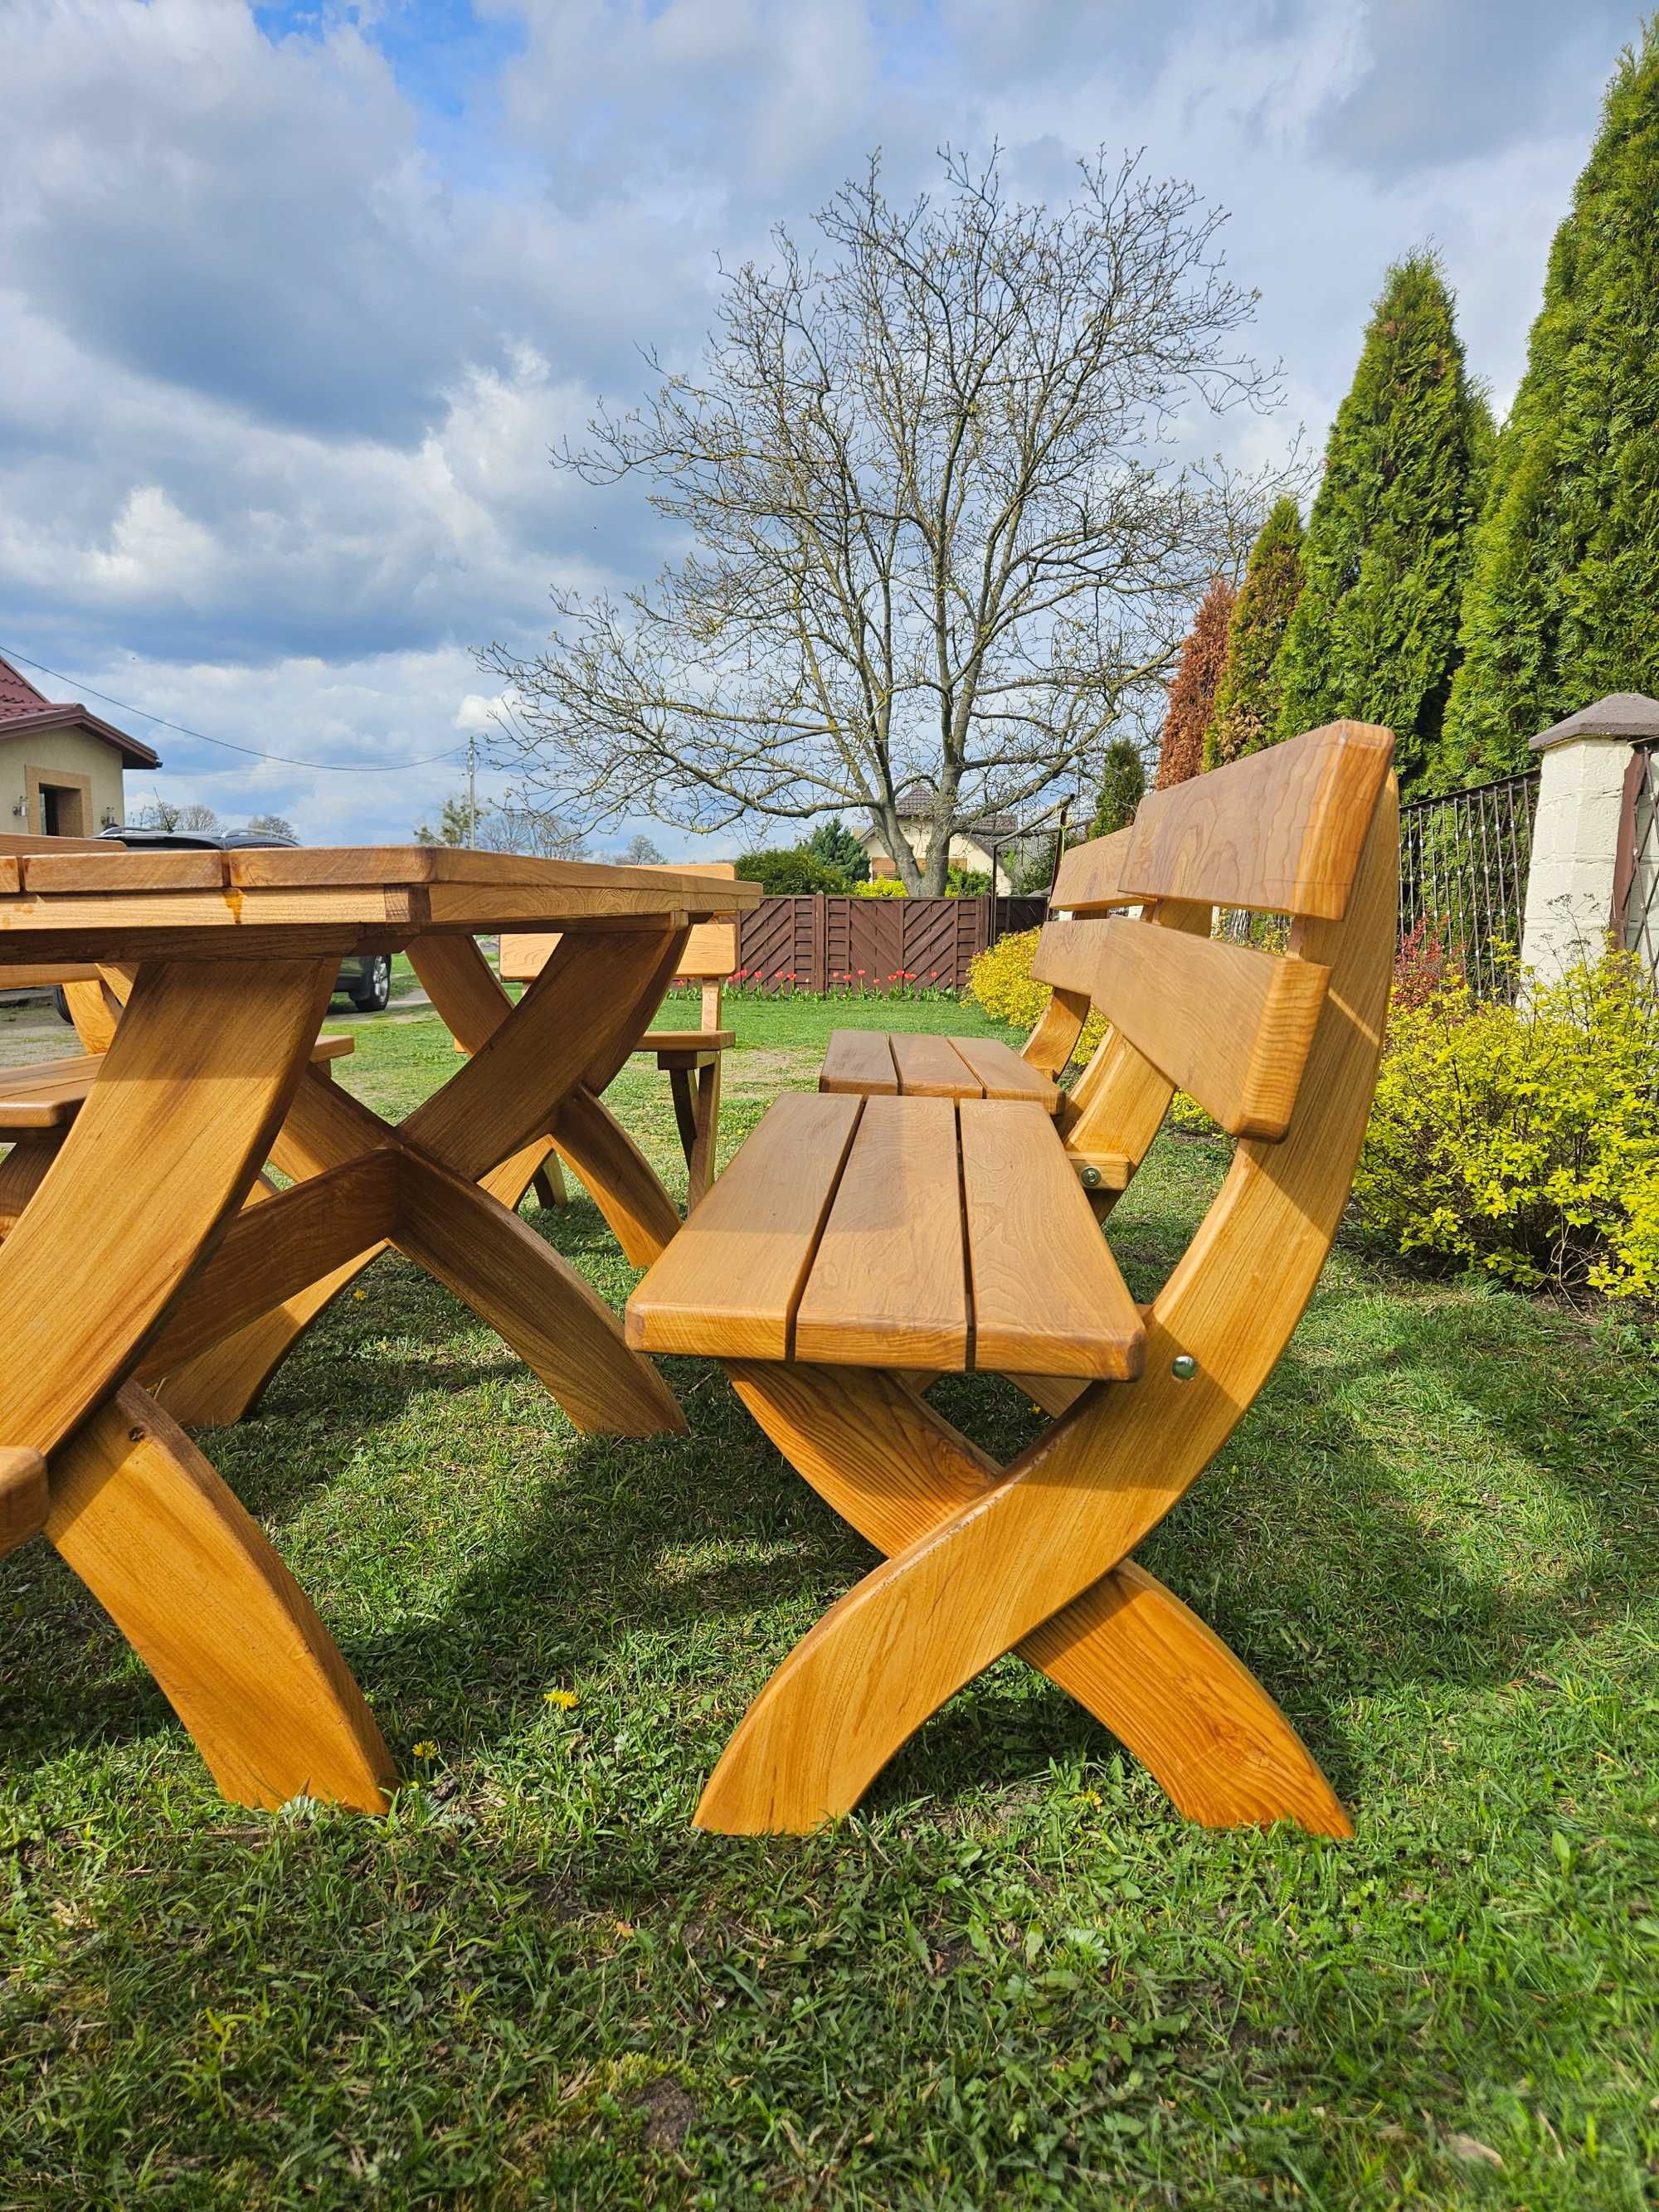 Drewniany zestaw ogrodowy | Stół + 4 ławy + 2 krzesła | Wiąz + jesion